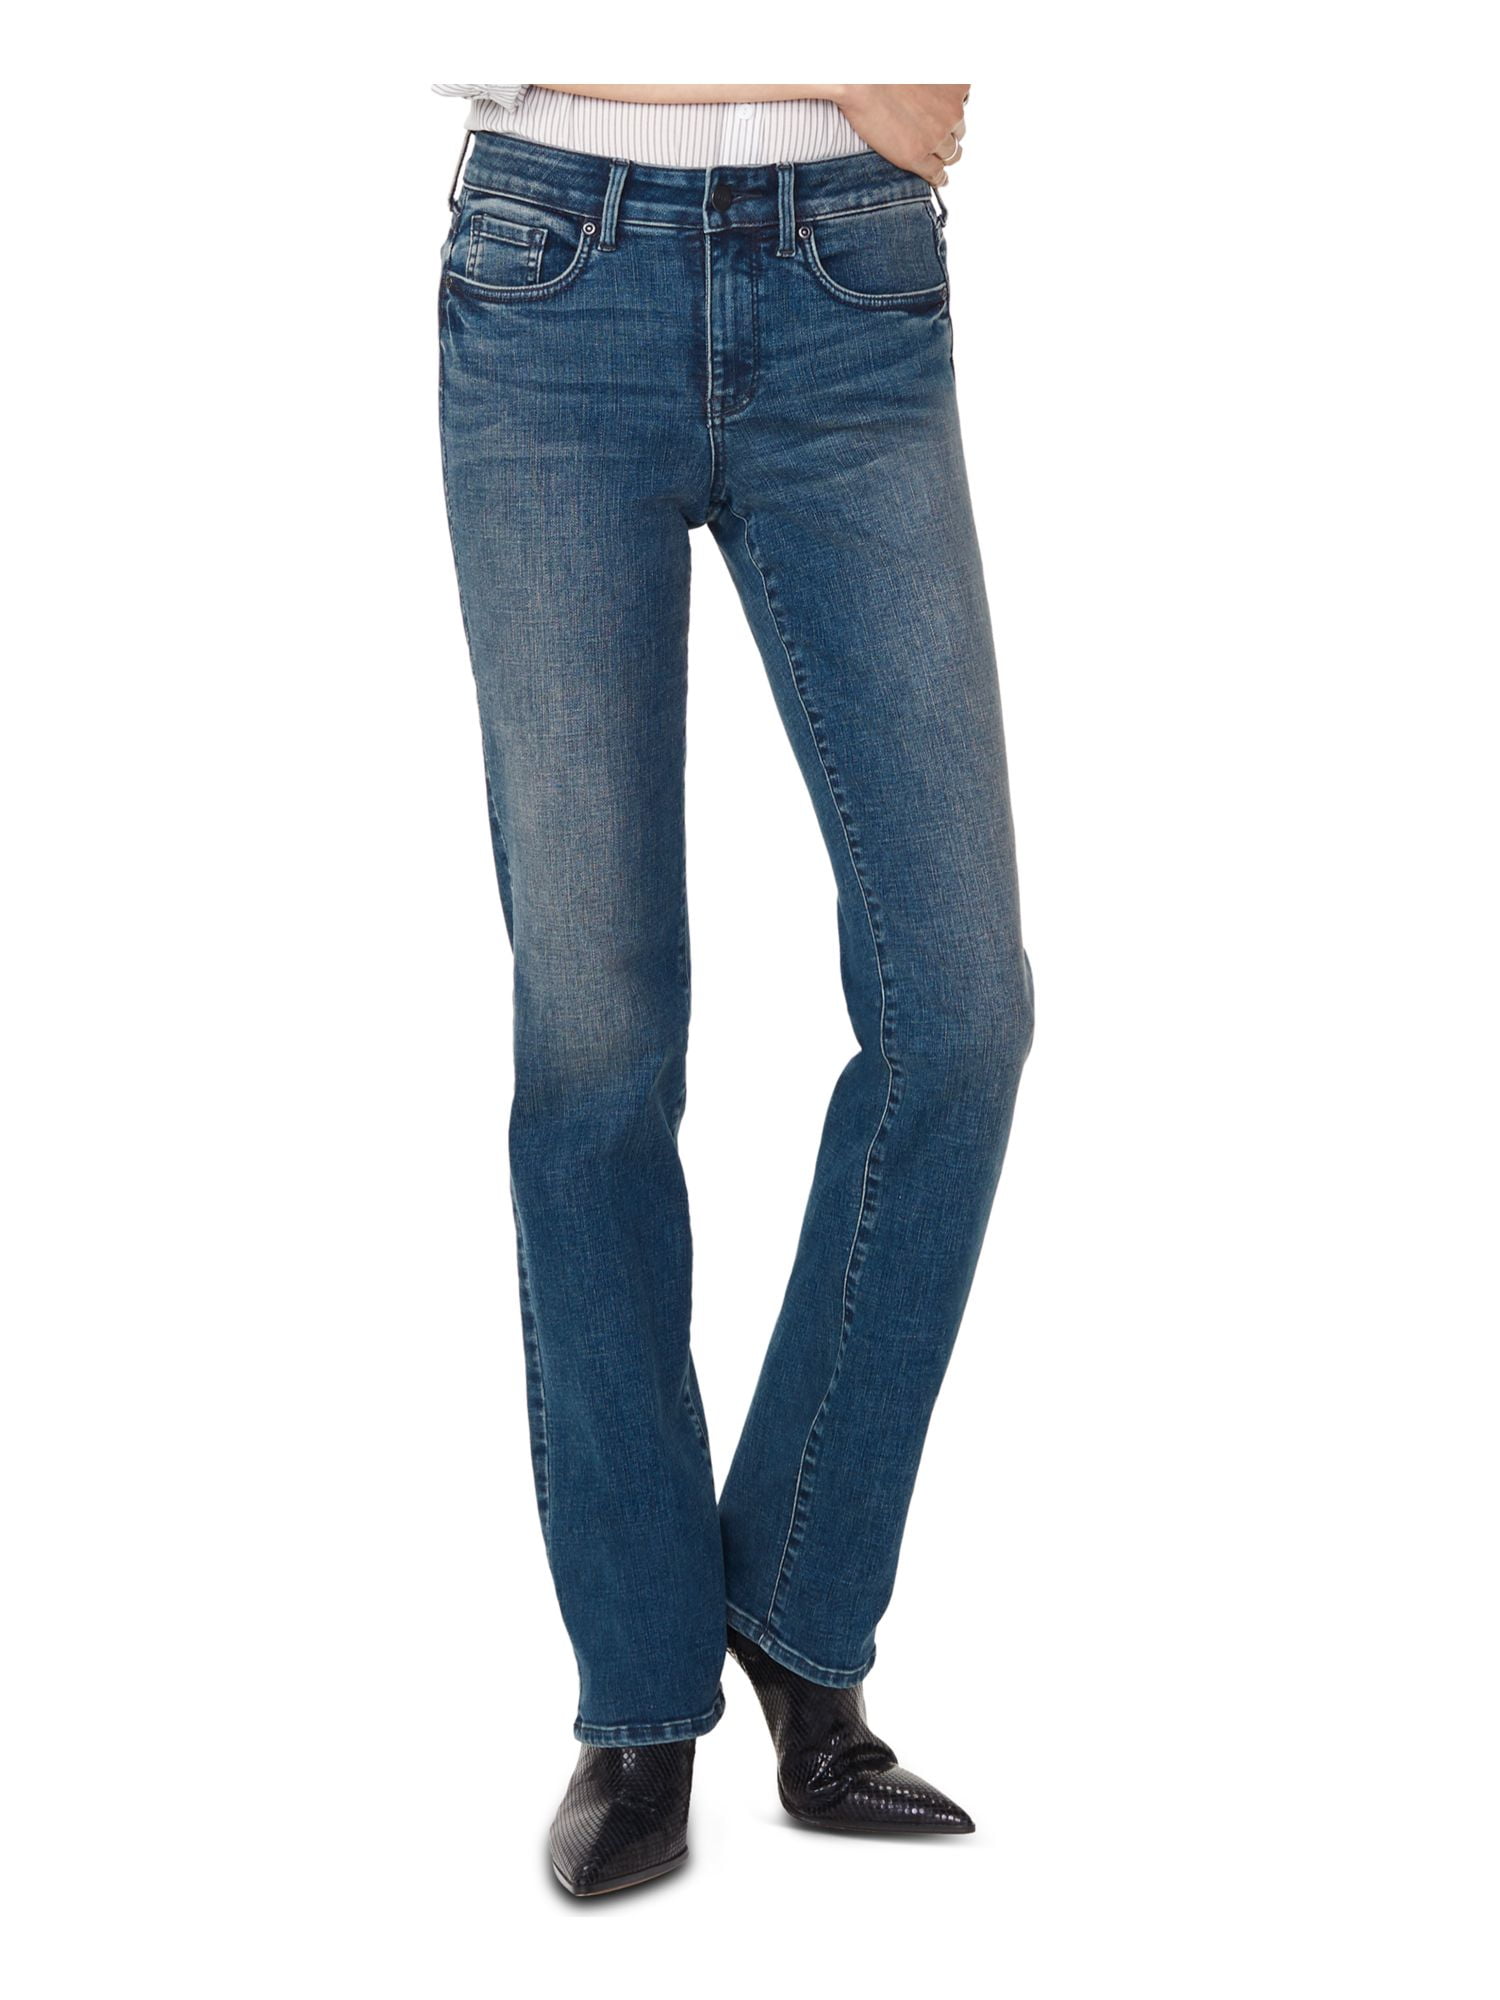 NYDJ Womens Blue Straight leg Jeans 0 - Walmart.com